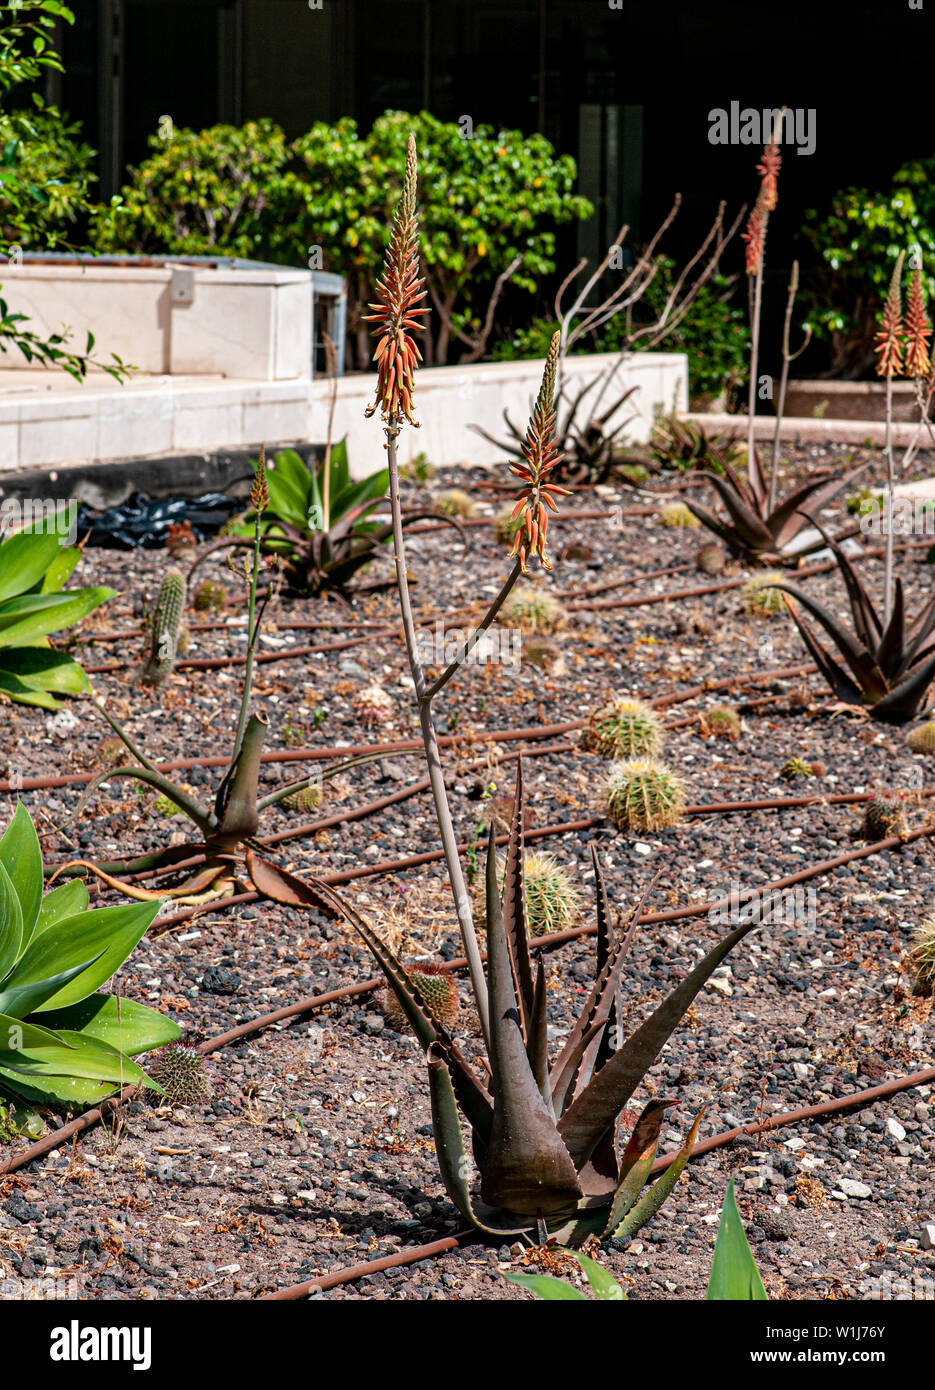 Hampes verticales d'un aloès plante succulente dans un jardin de cactus et succulentes photographiés à Tel Aviv, Israël en mai Banque D'Images